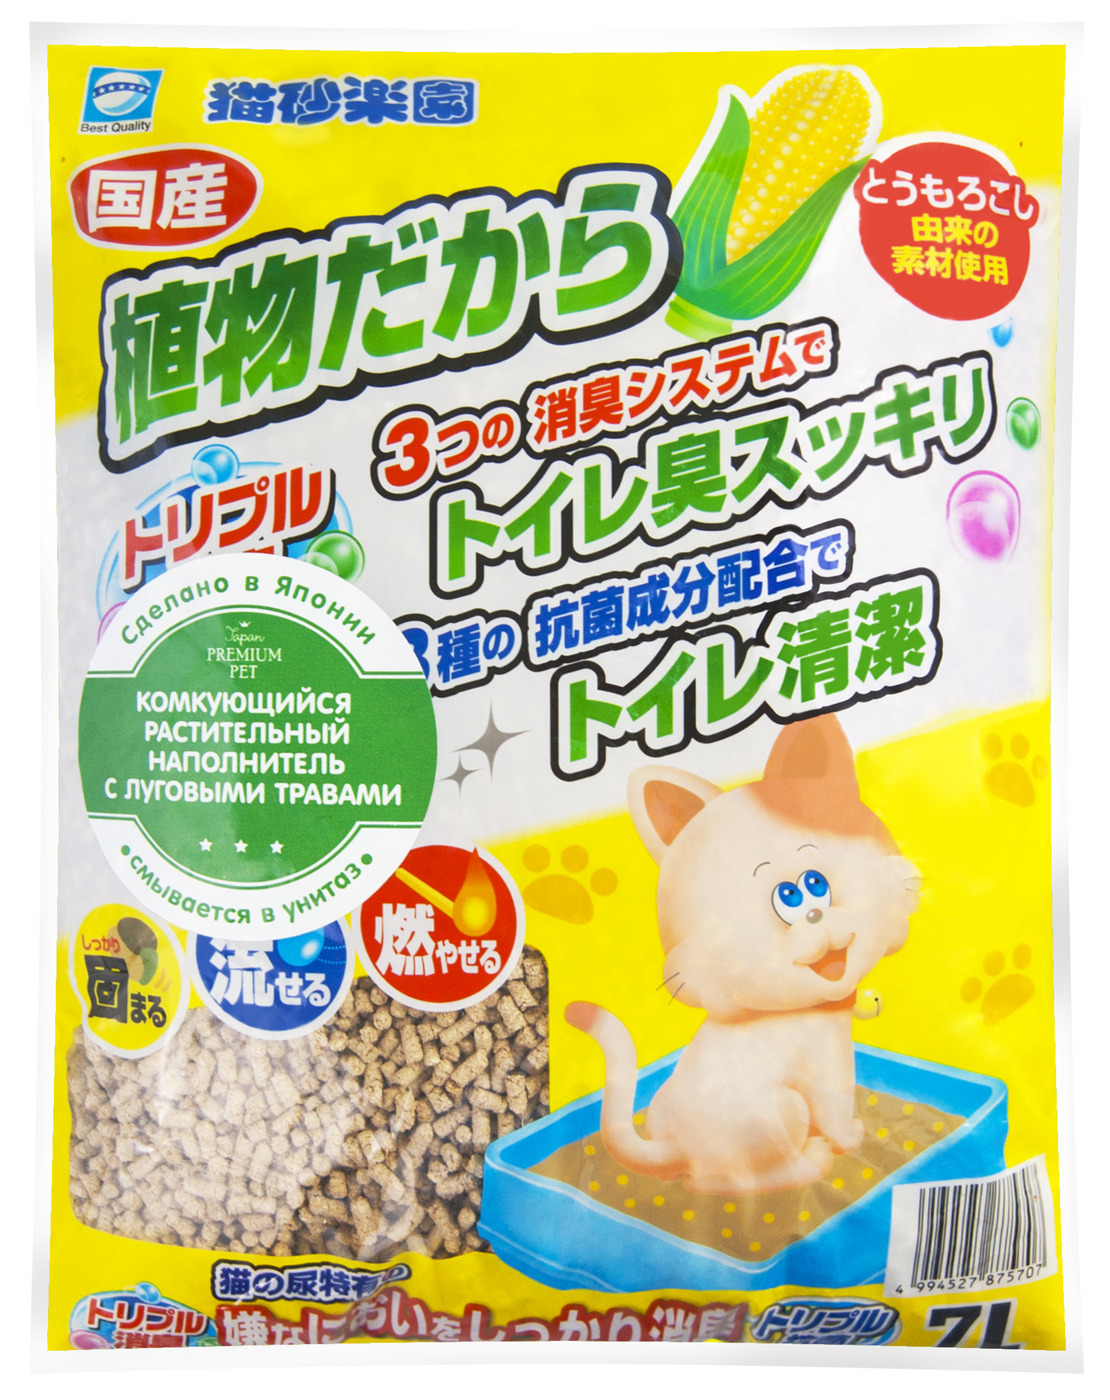 Japan Premium Pet наполнитель комкующийся кукурузный с луговыми травами, 7л. Japan Premium Pet наполнитель. Комкующийся наполнитель earthpet растительный с луговыми травами 7 л. Earth Pet наполнитель для кошачьего туалета. Комкующийся наполнитель pets